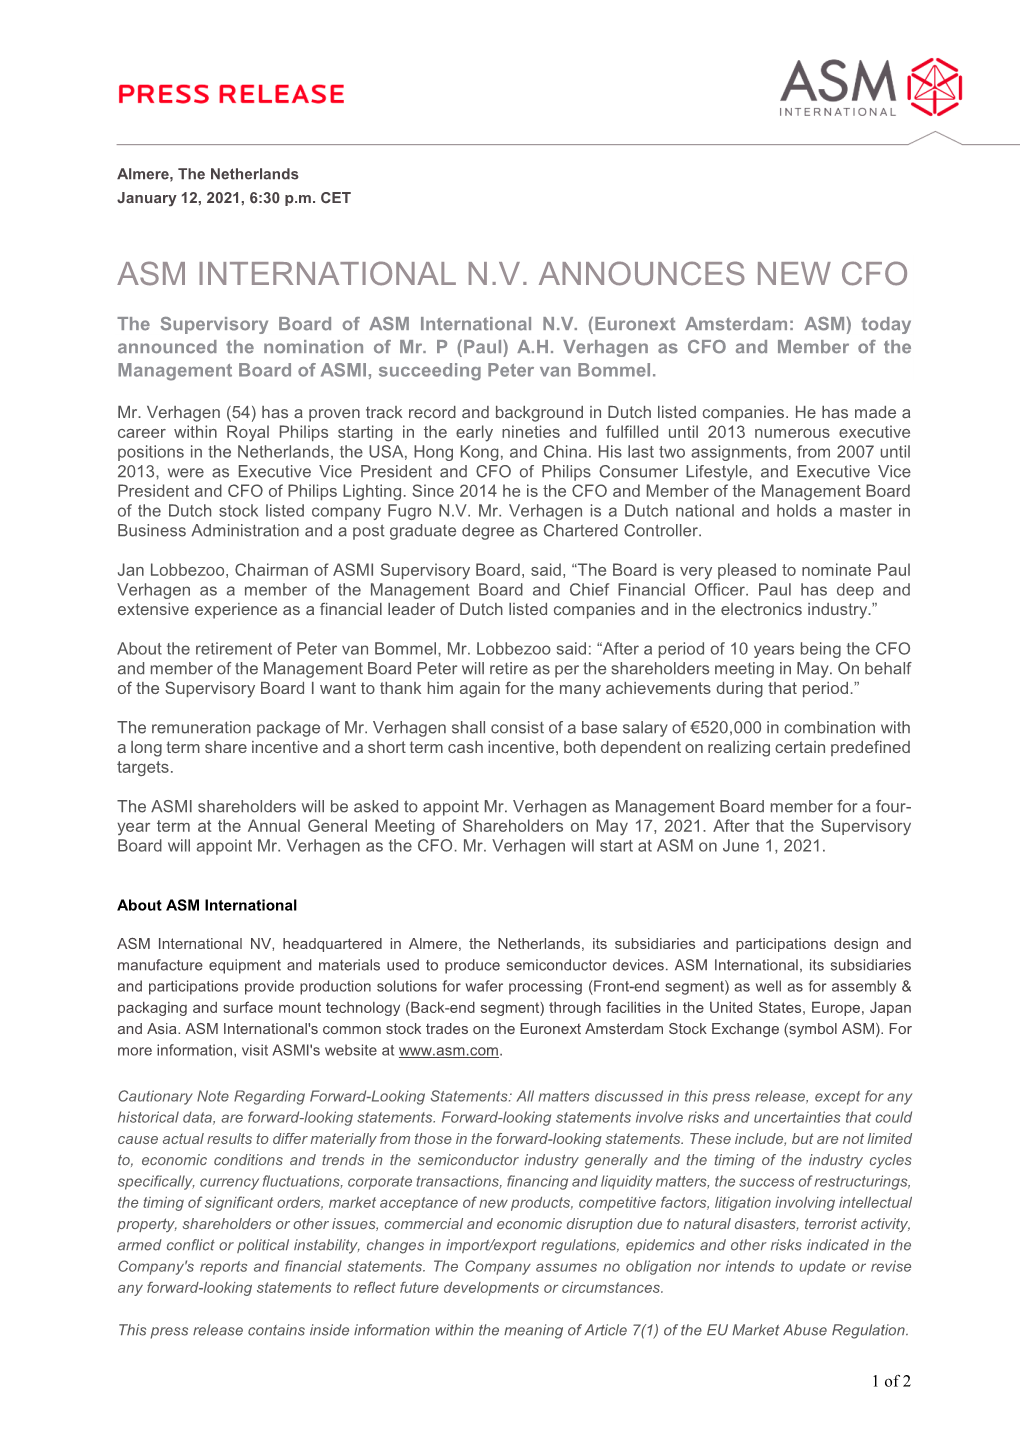 Asm International N.V. Announces New Cfo